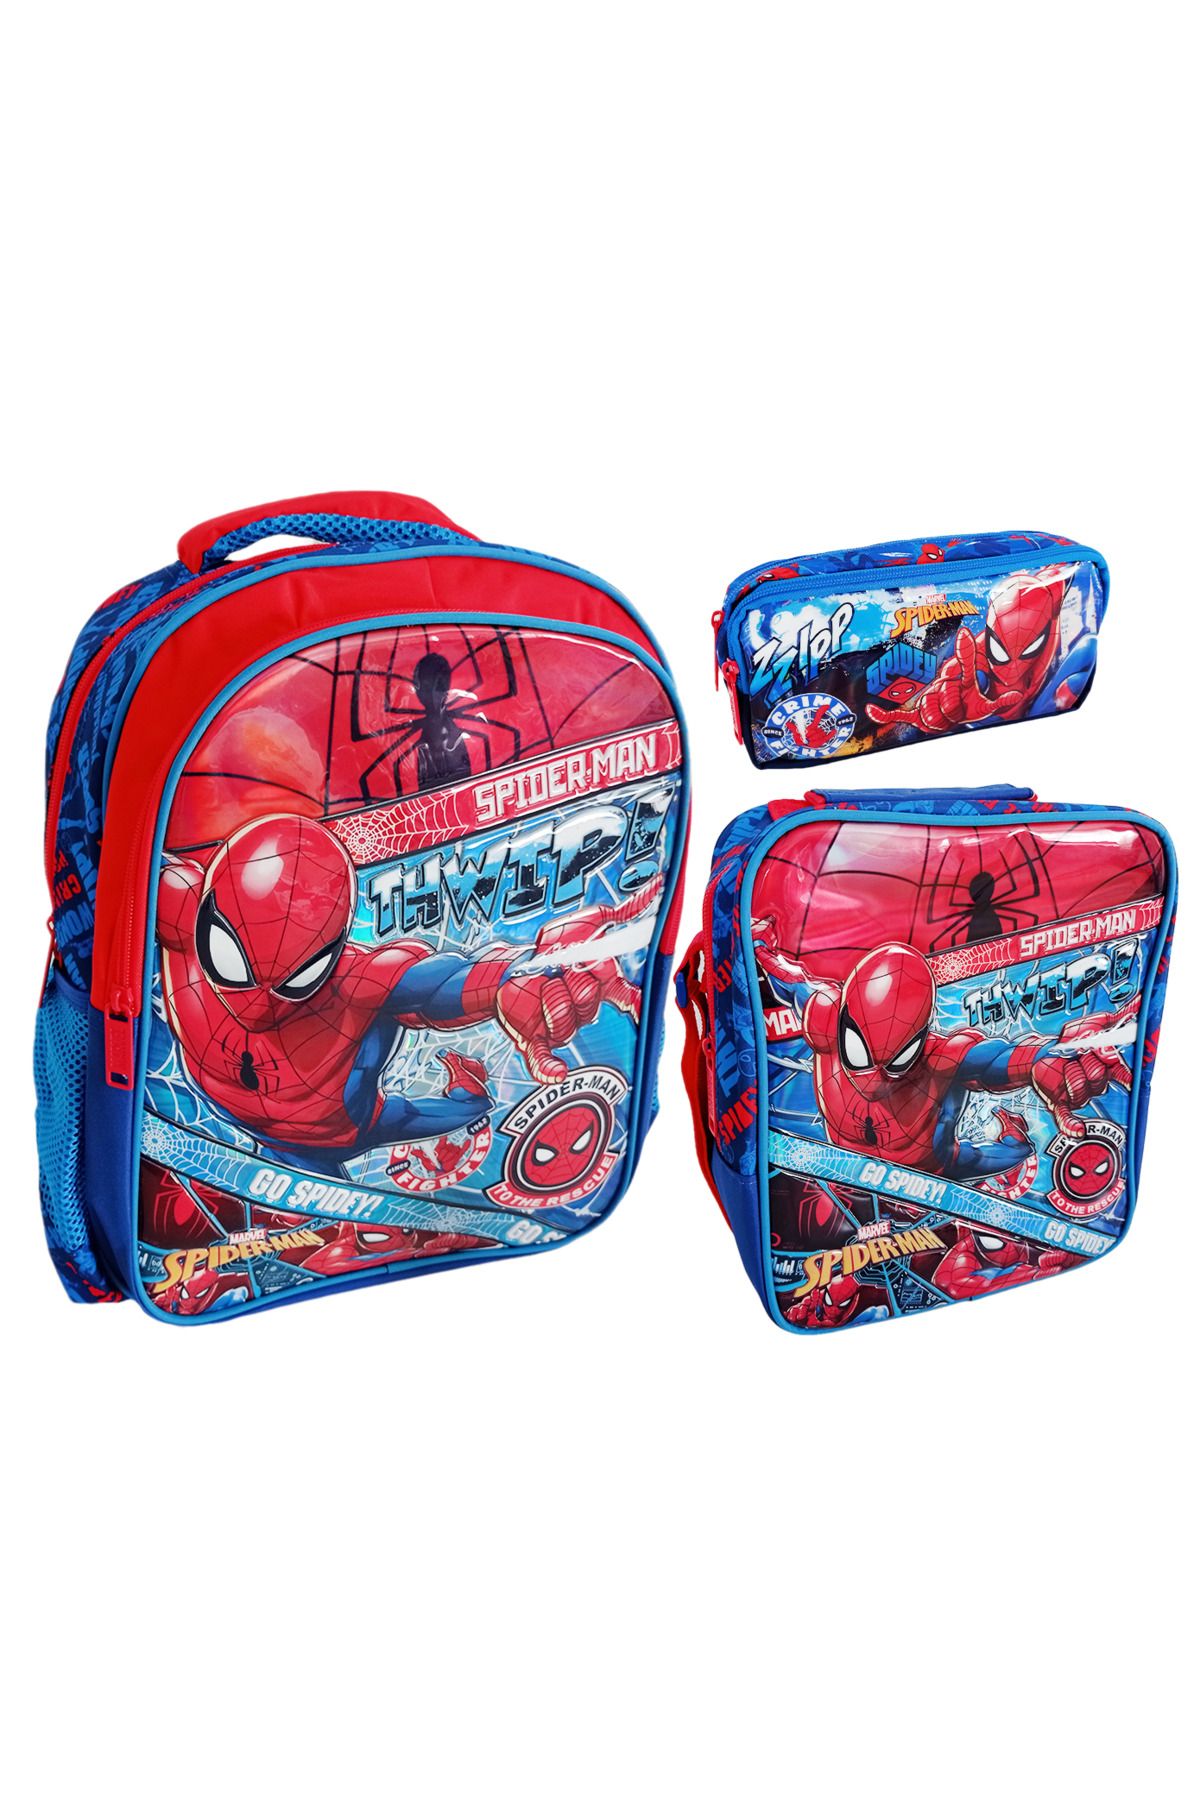 Hakan Çanta Spiderman Okul Çantası Beslenme Çantası Kalemlik 3'lü Set